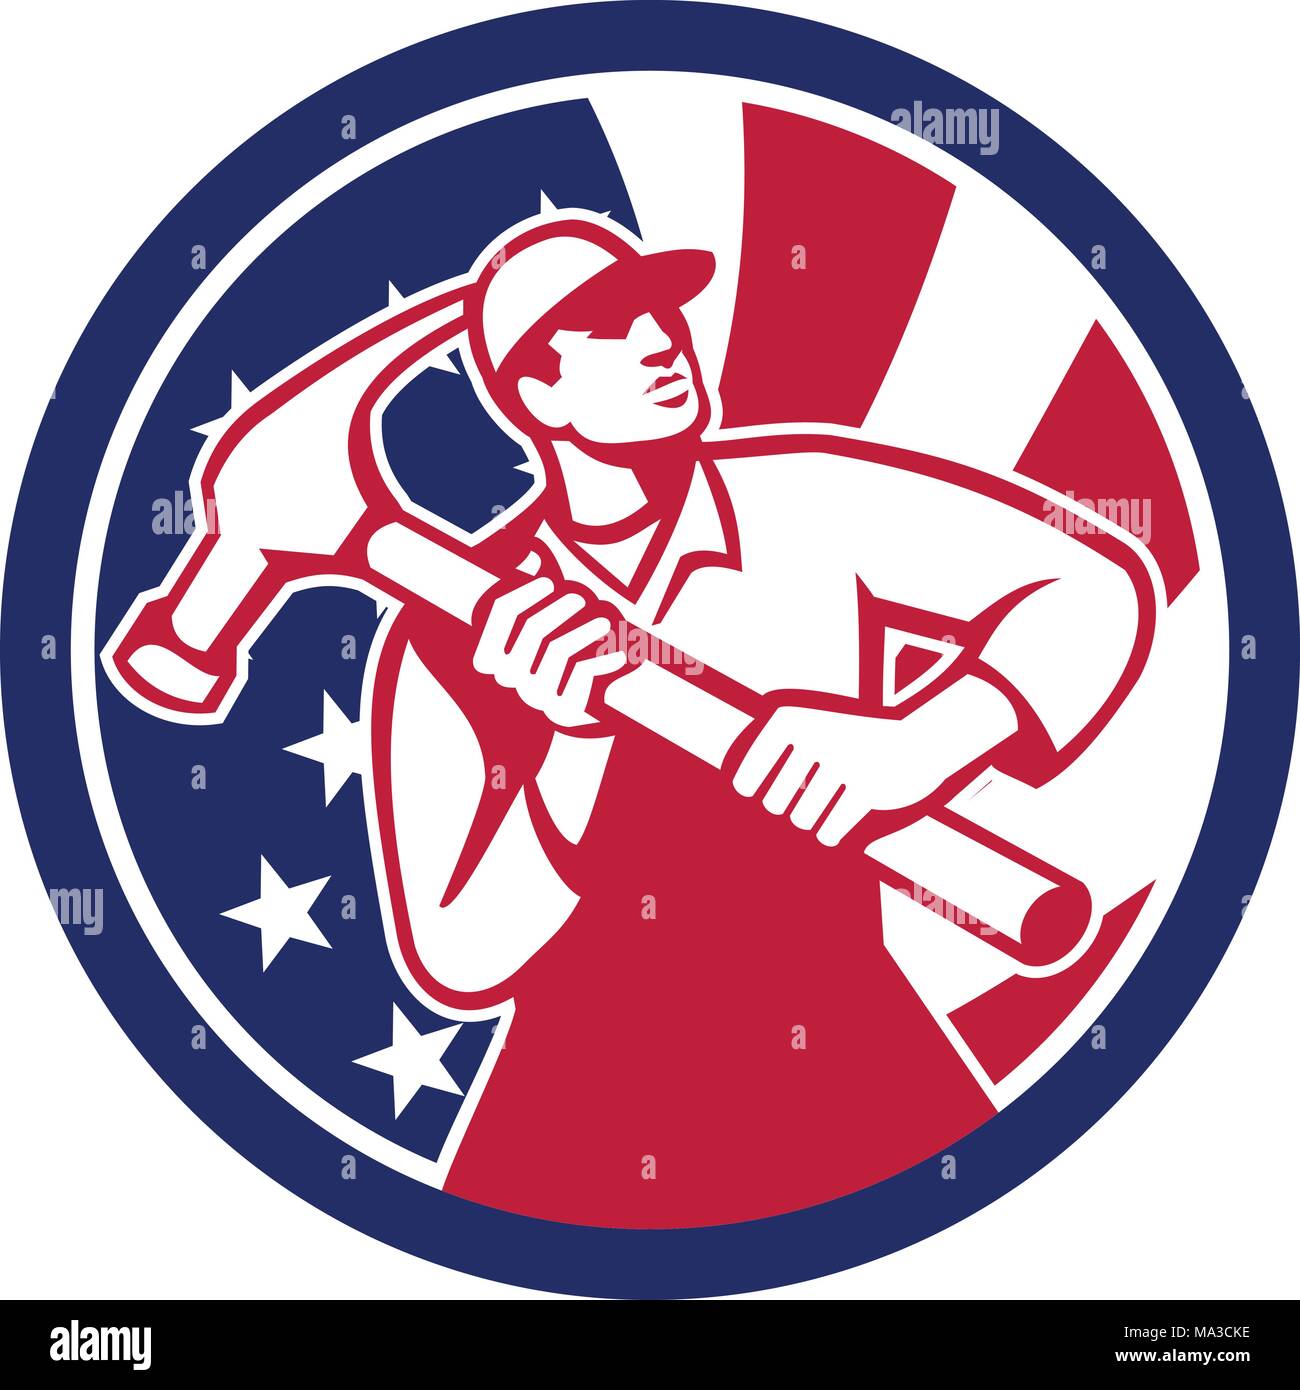 Symbol Retro Stil Abbildung der Amerikanischen Heimwerker, Tischler, Builder, Schreiner, Bauarbeiter halten hammer Vereinigte Staaten von Amerika USA star span Stock Vektor